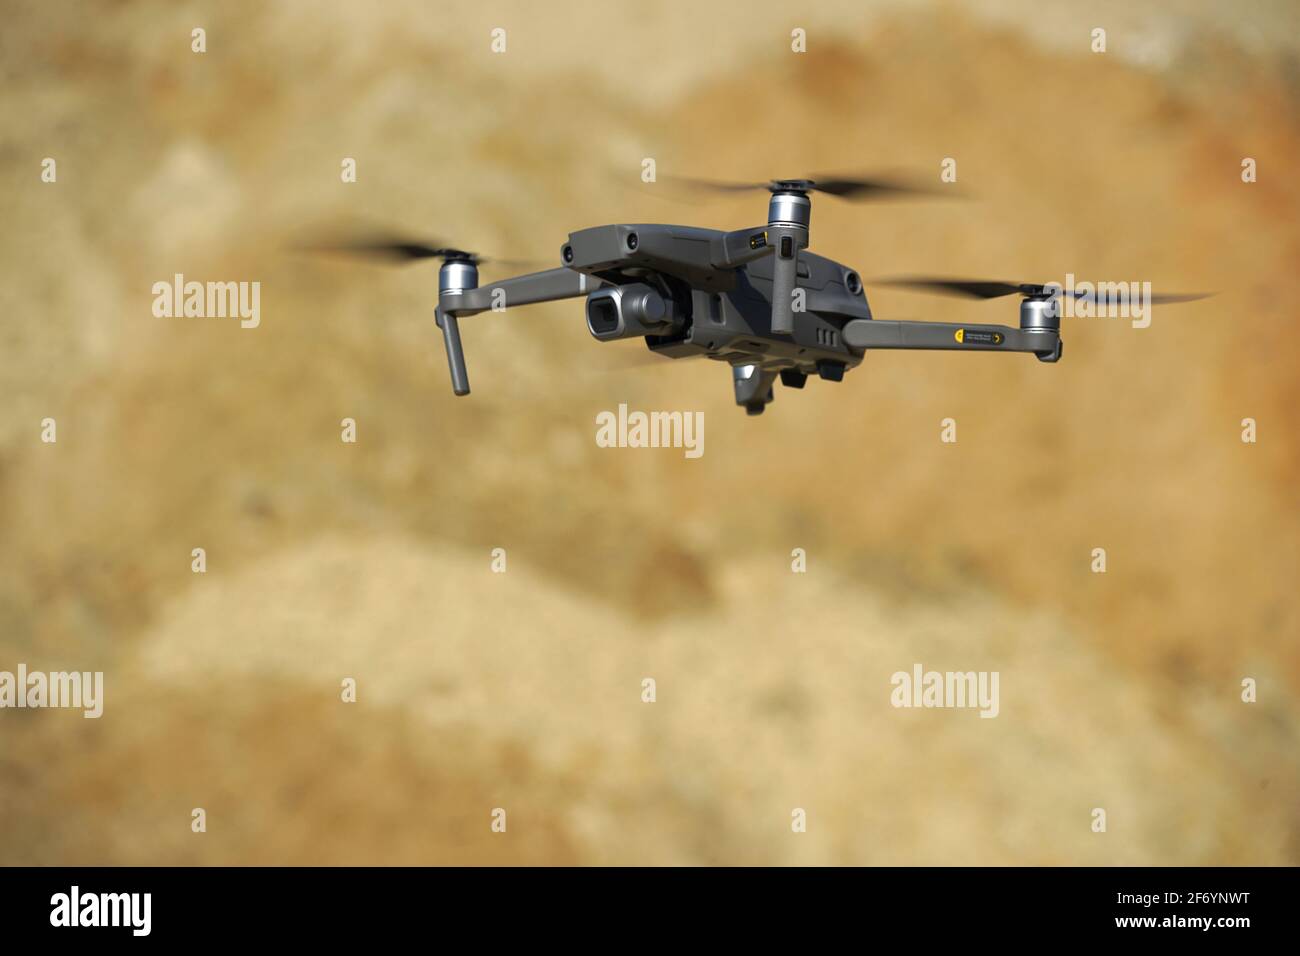 Il drone Multicopter si trova davanti a una duna di sabbia alla luce del sole Foto Stock